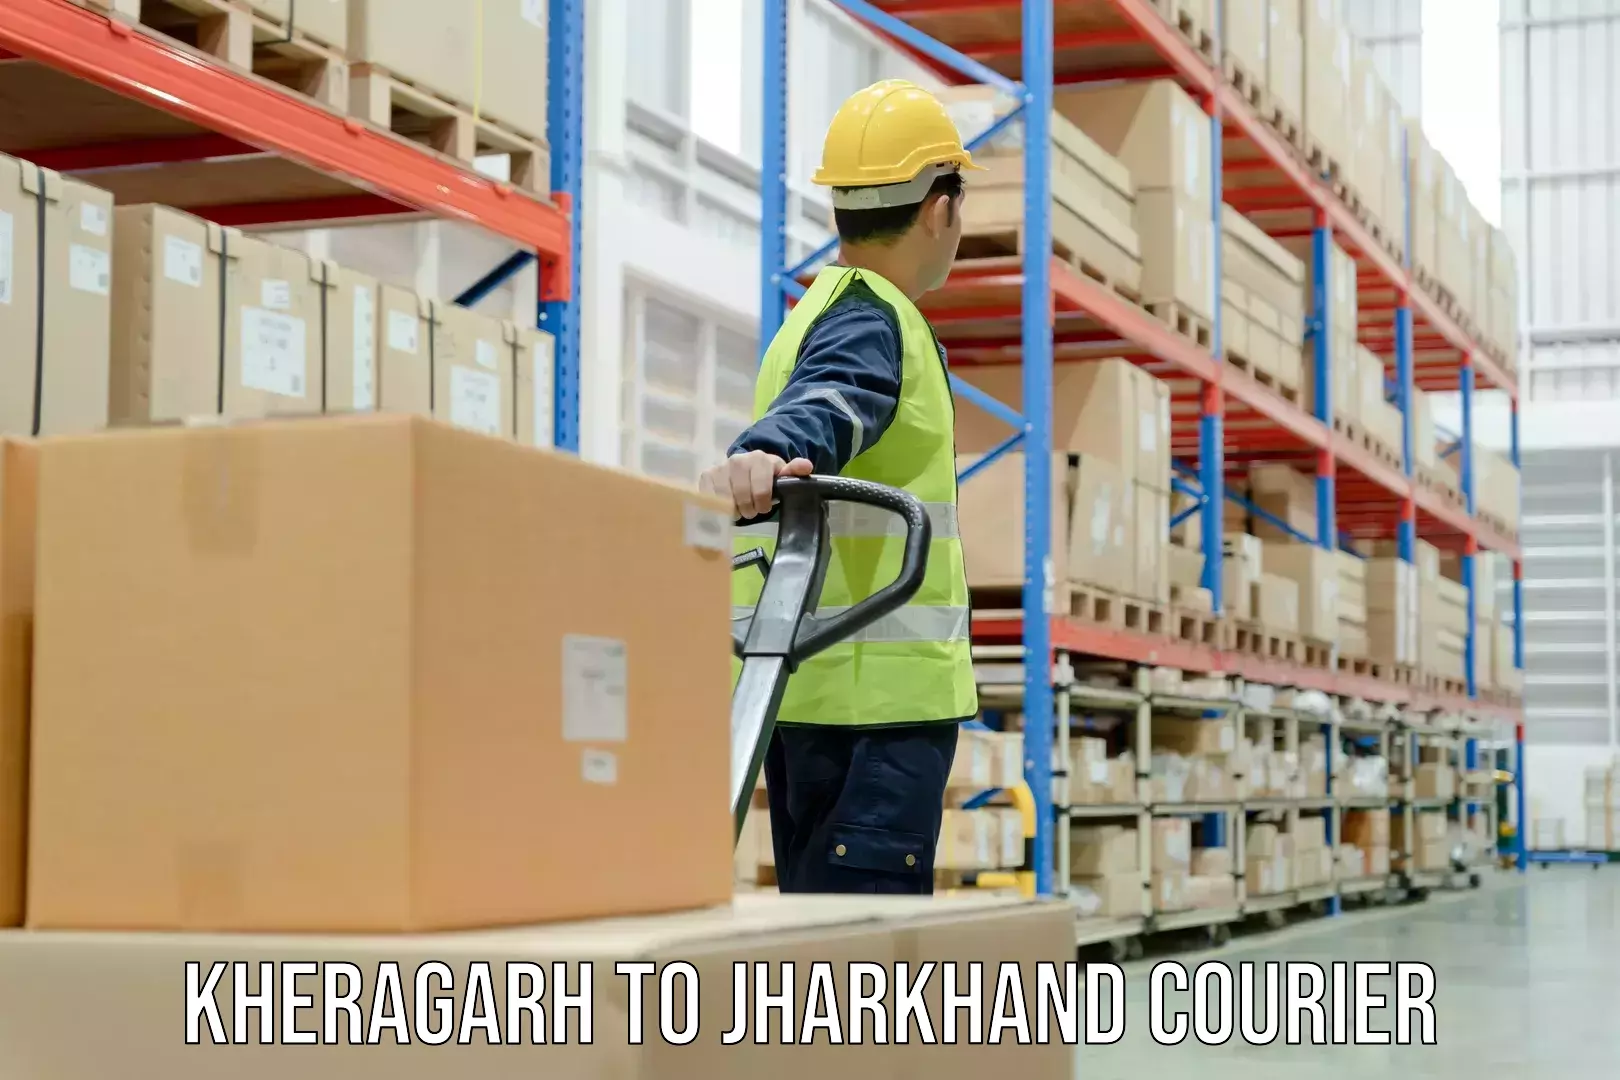 Cargo courier service Kheragarh to IIT Dhanbad